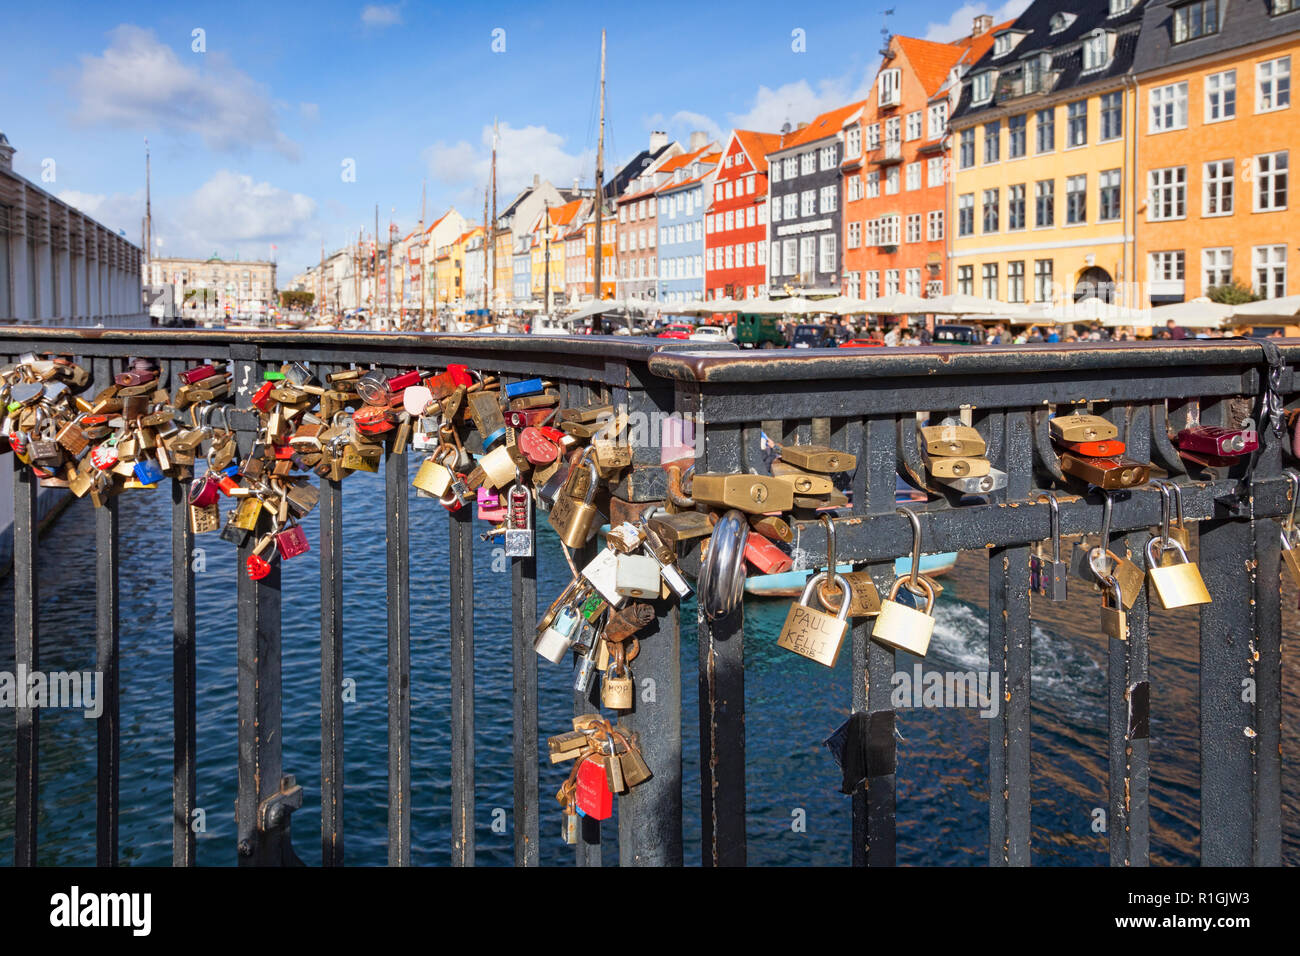 23. September 2018: Kopenhagen, Dänemark - Vorhängeschlösser oder Liebe Sperren auf eine Kanalbrücke am Nyhavn, an einem sonnigen Herbsttag. Stockfoto